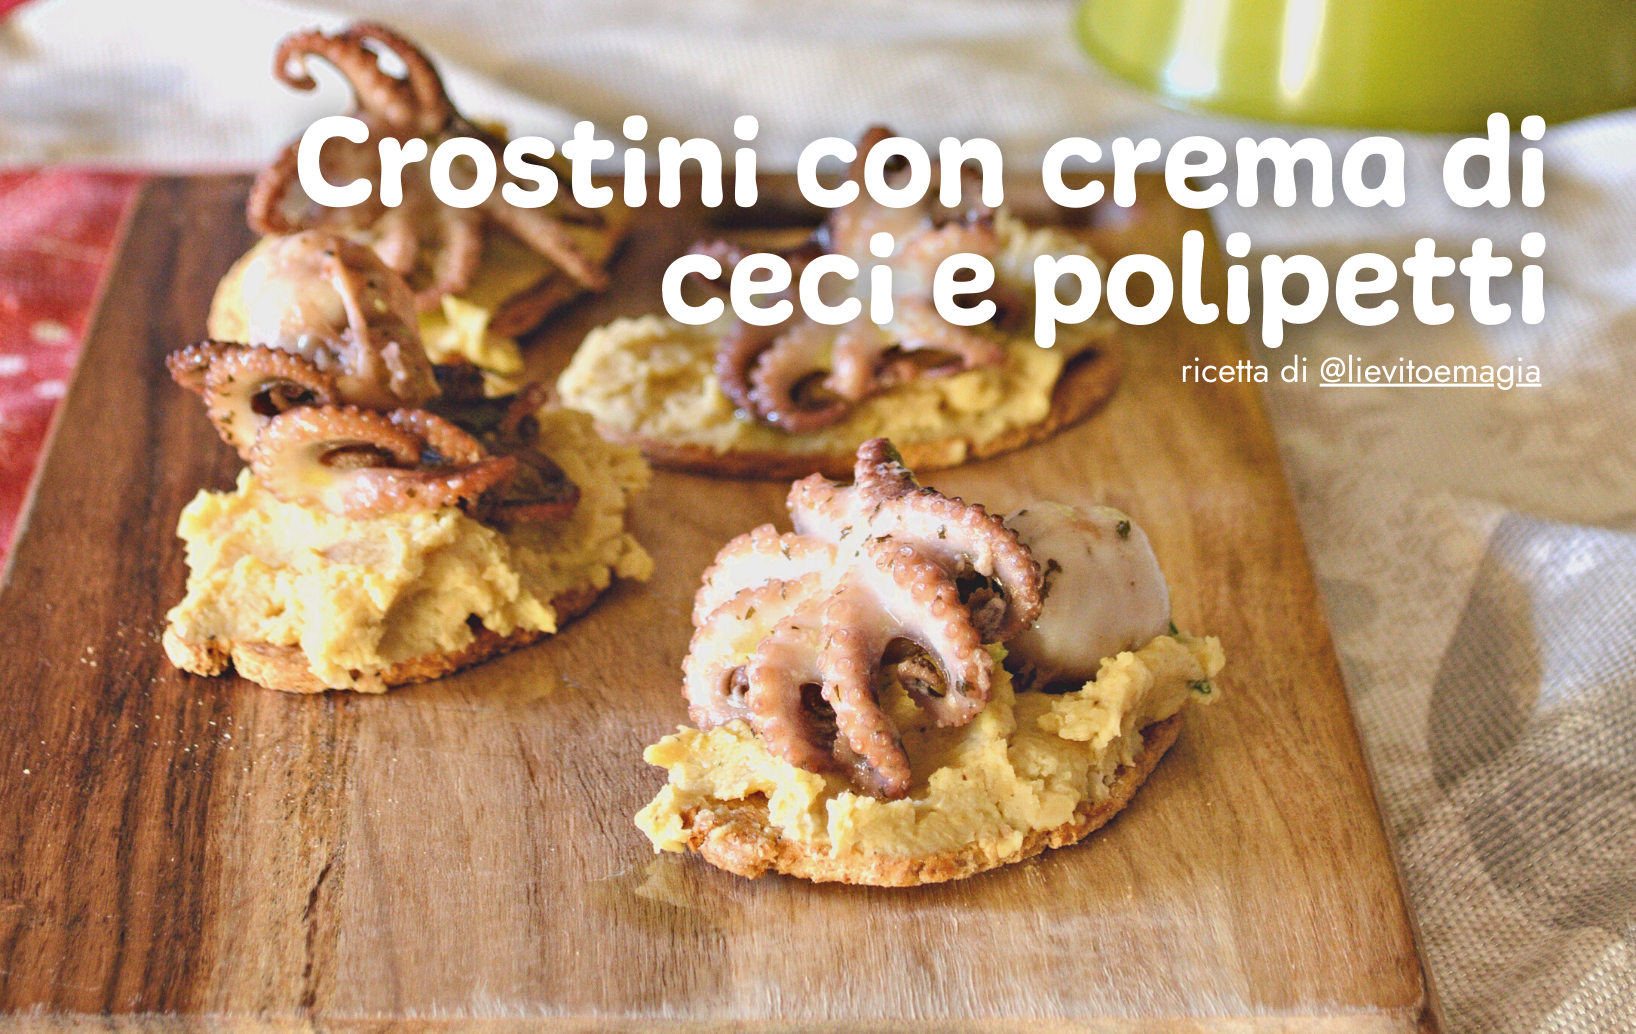 crostini-con-crema-di-ceci-e-polipetti-1.png